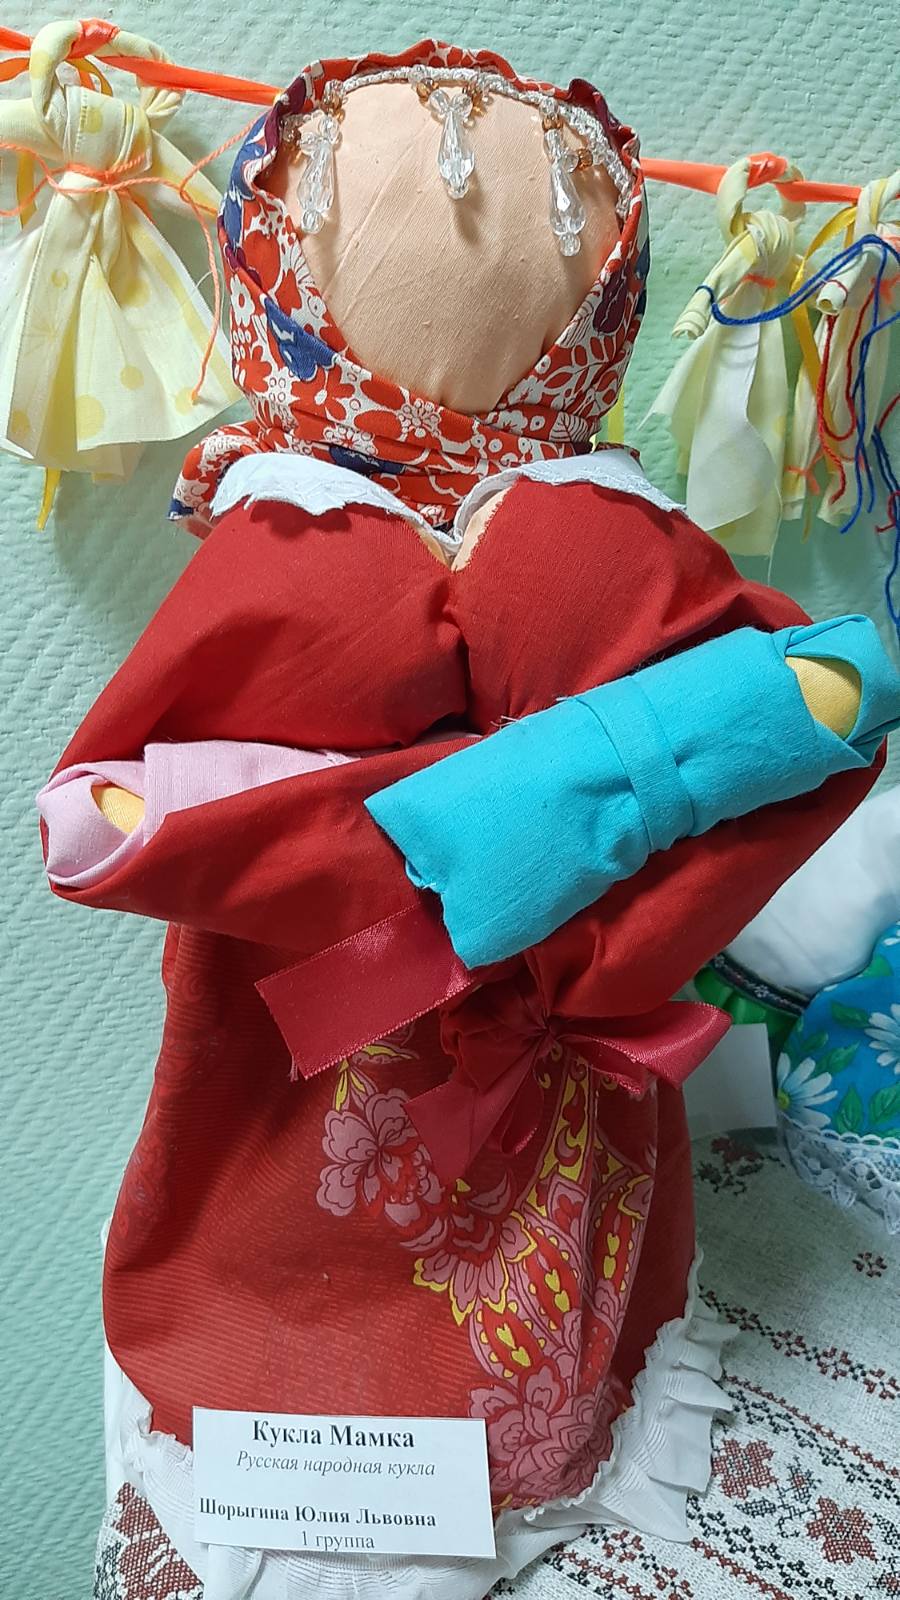 Ольга Миронова: Народная кукла. Русские традиции